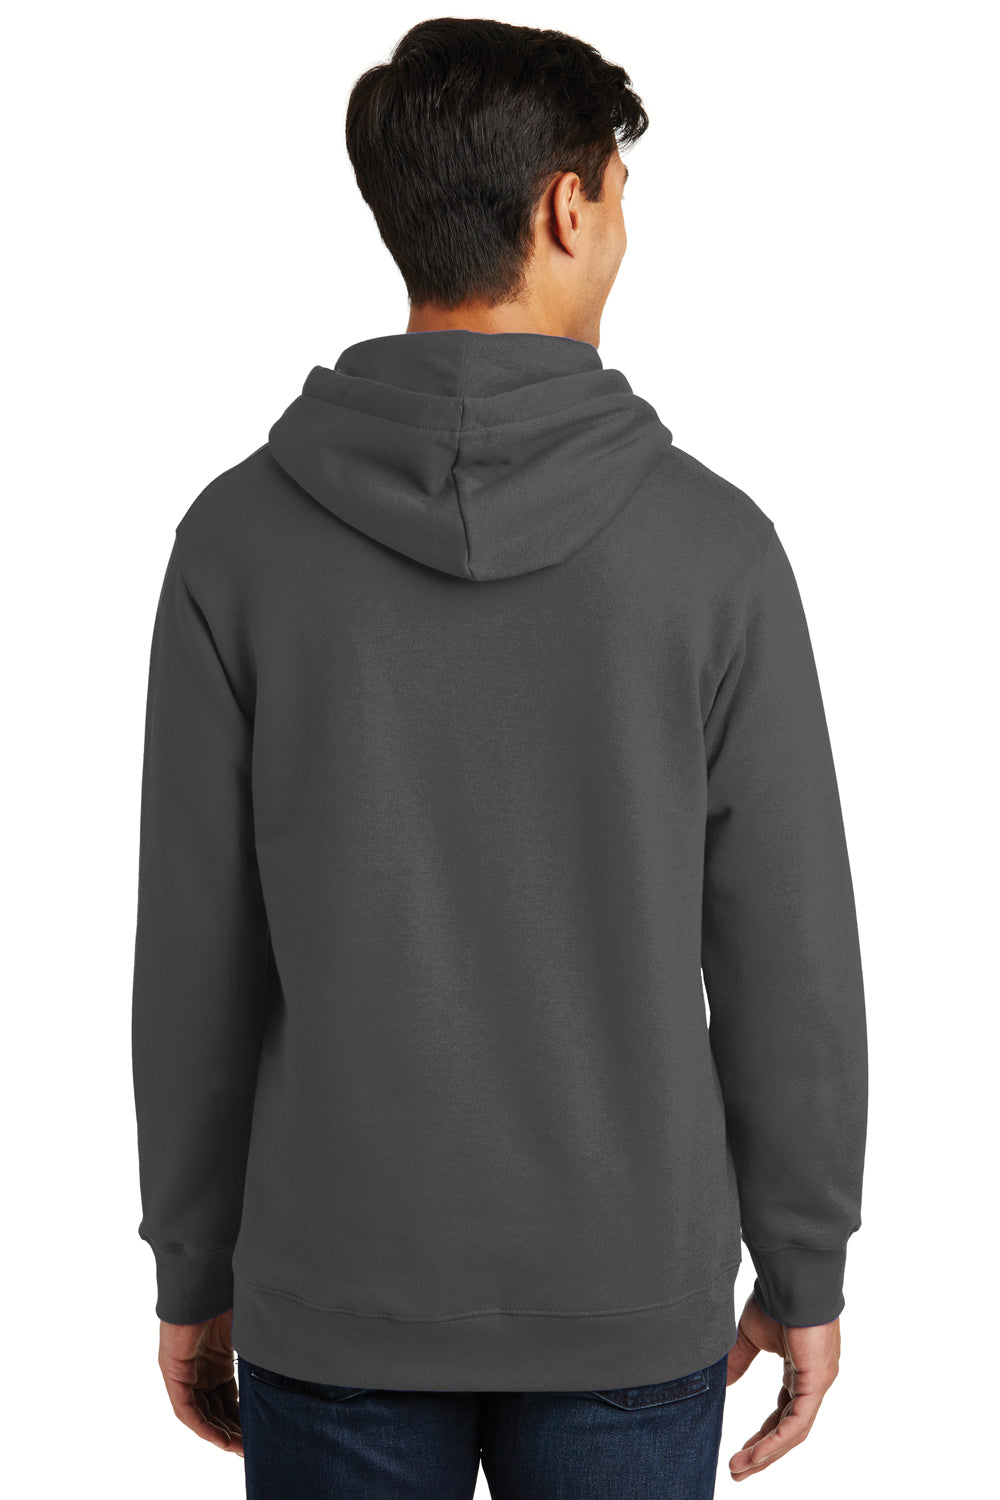 Port & Company PC850H Mens Fan Favorite Fleece Hooded Sweatshirt Hoodie Charcoal Grey Back